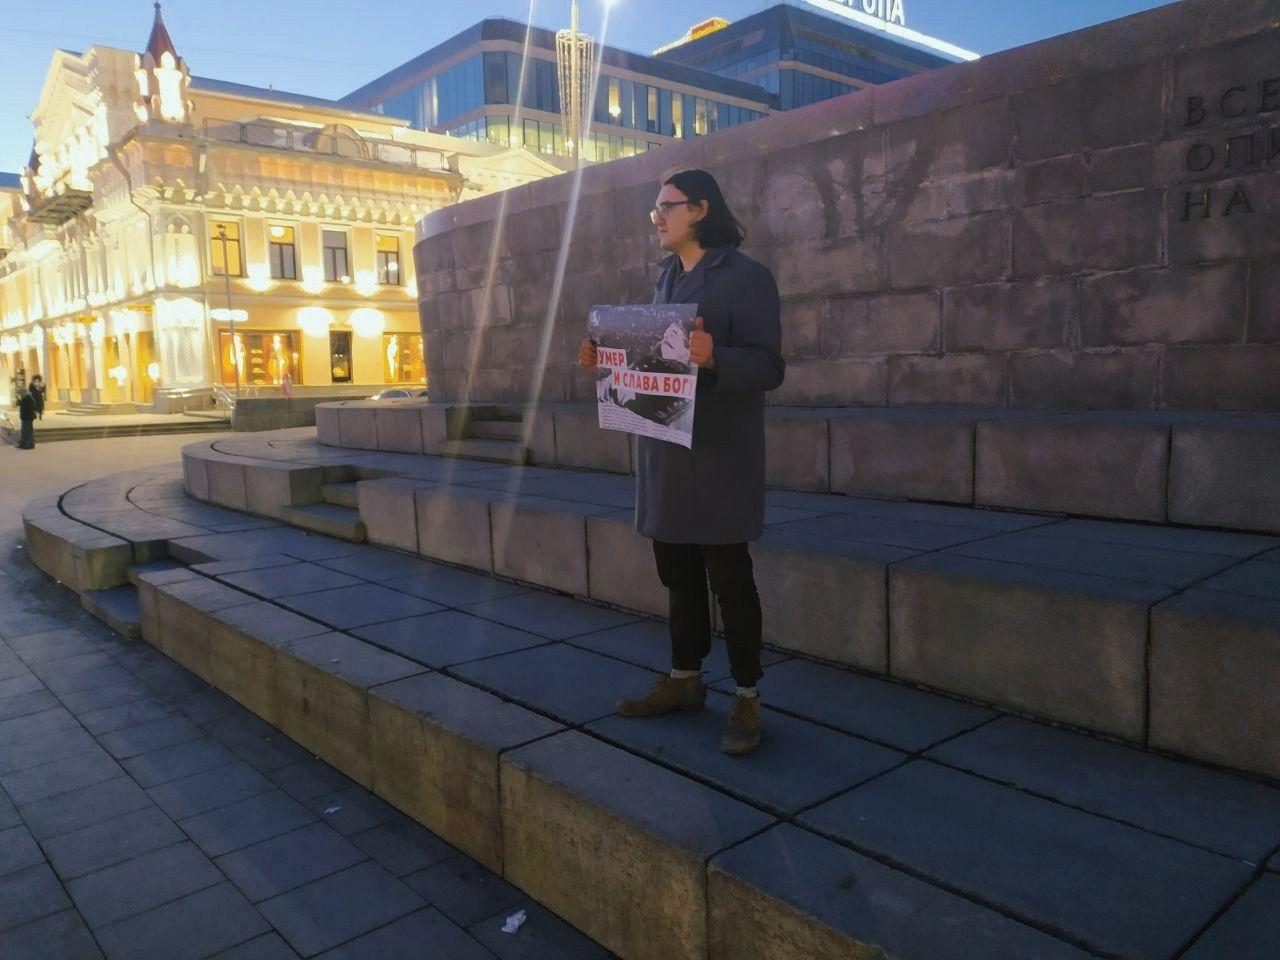 Другой активист с тем же плакатом у памятника Ленину